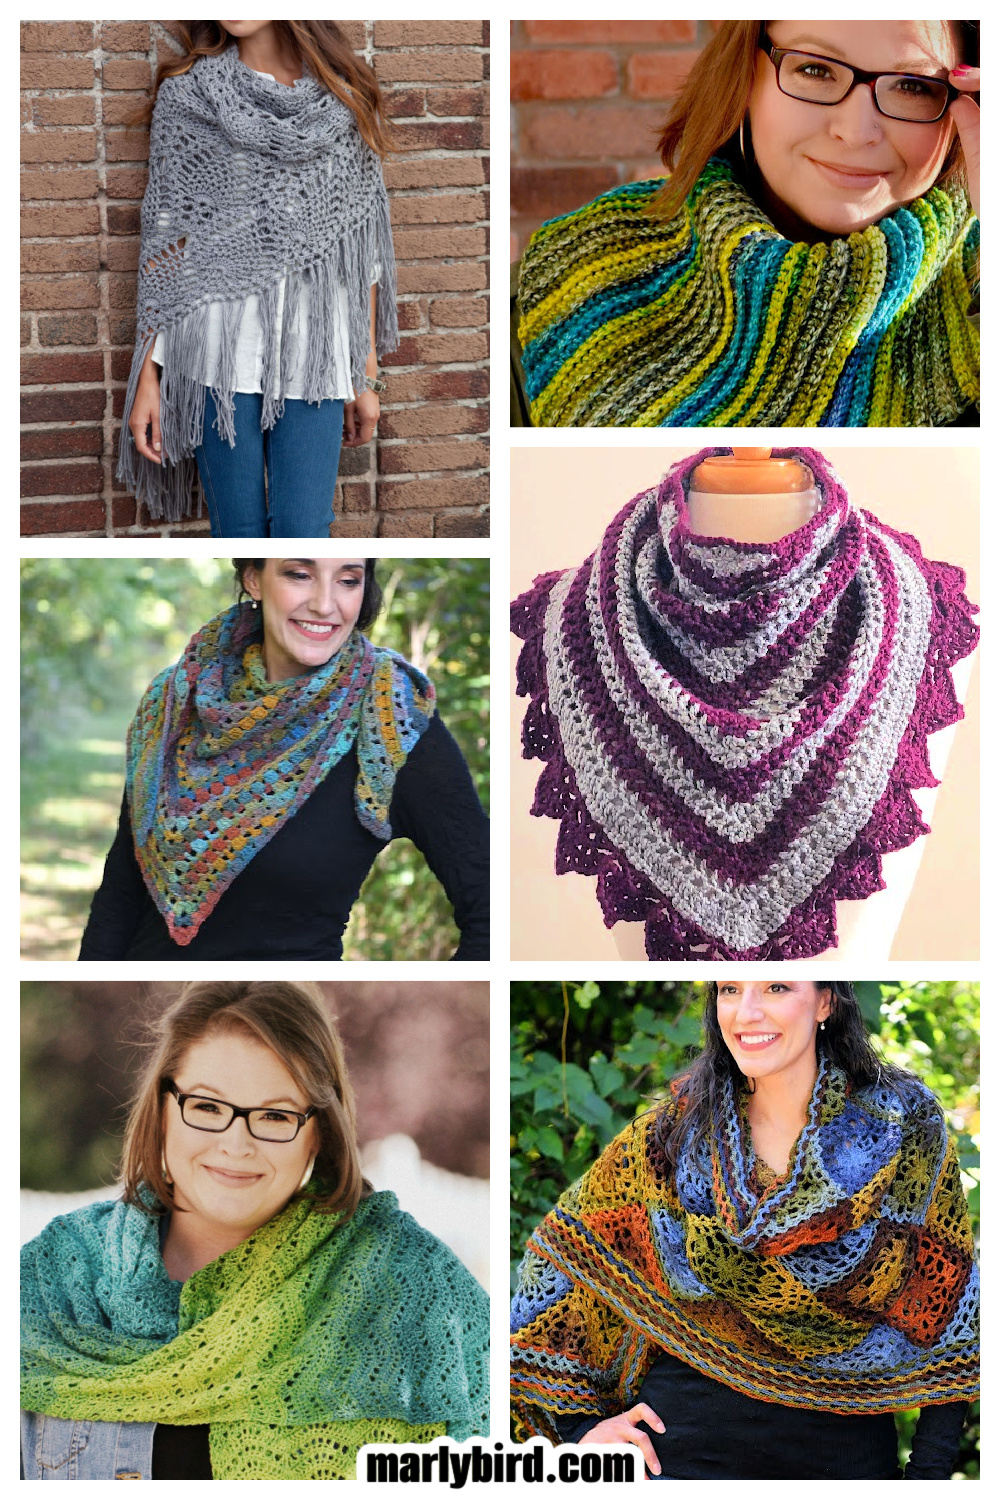 Beautiful 10+ Crochet Lace Stitches - Ideas and Free Patterns